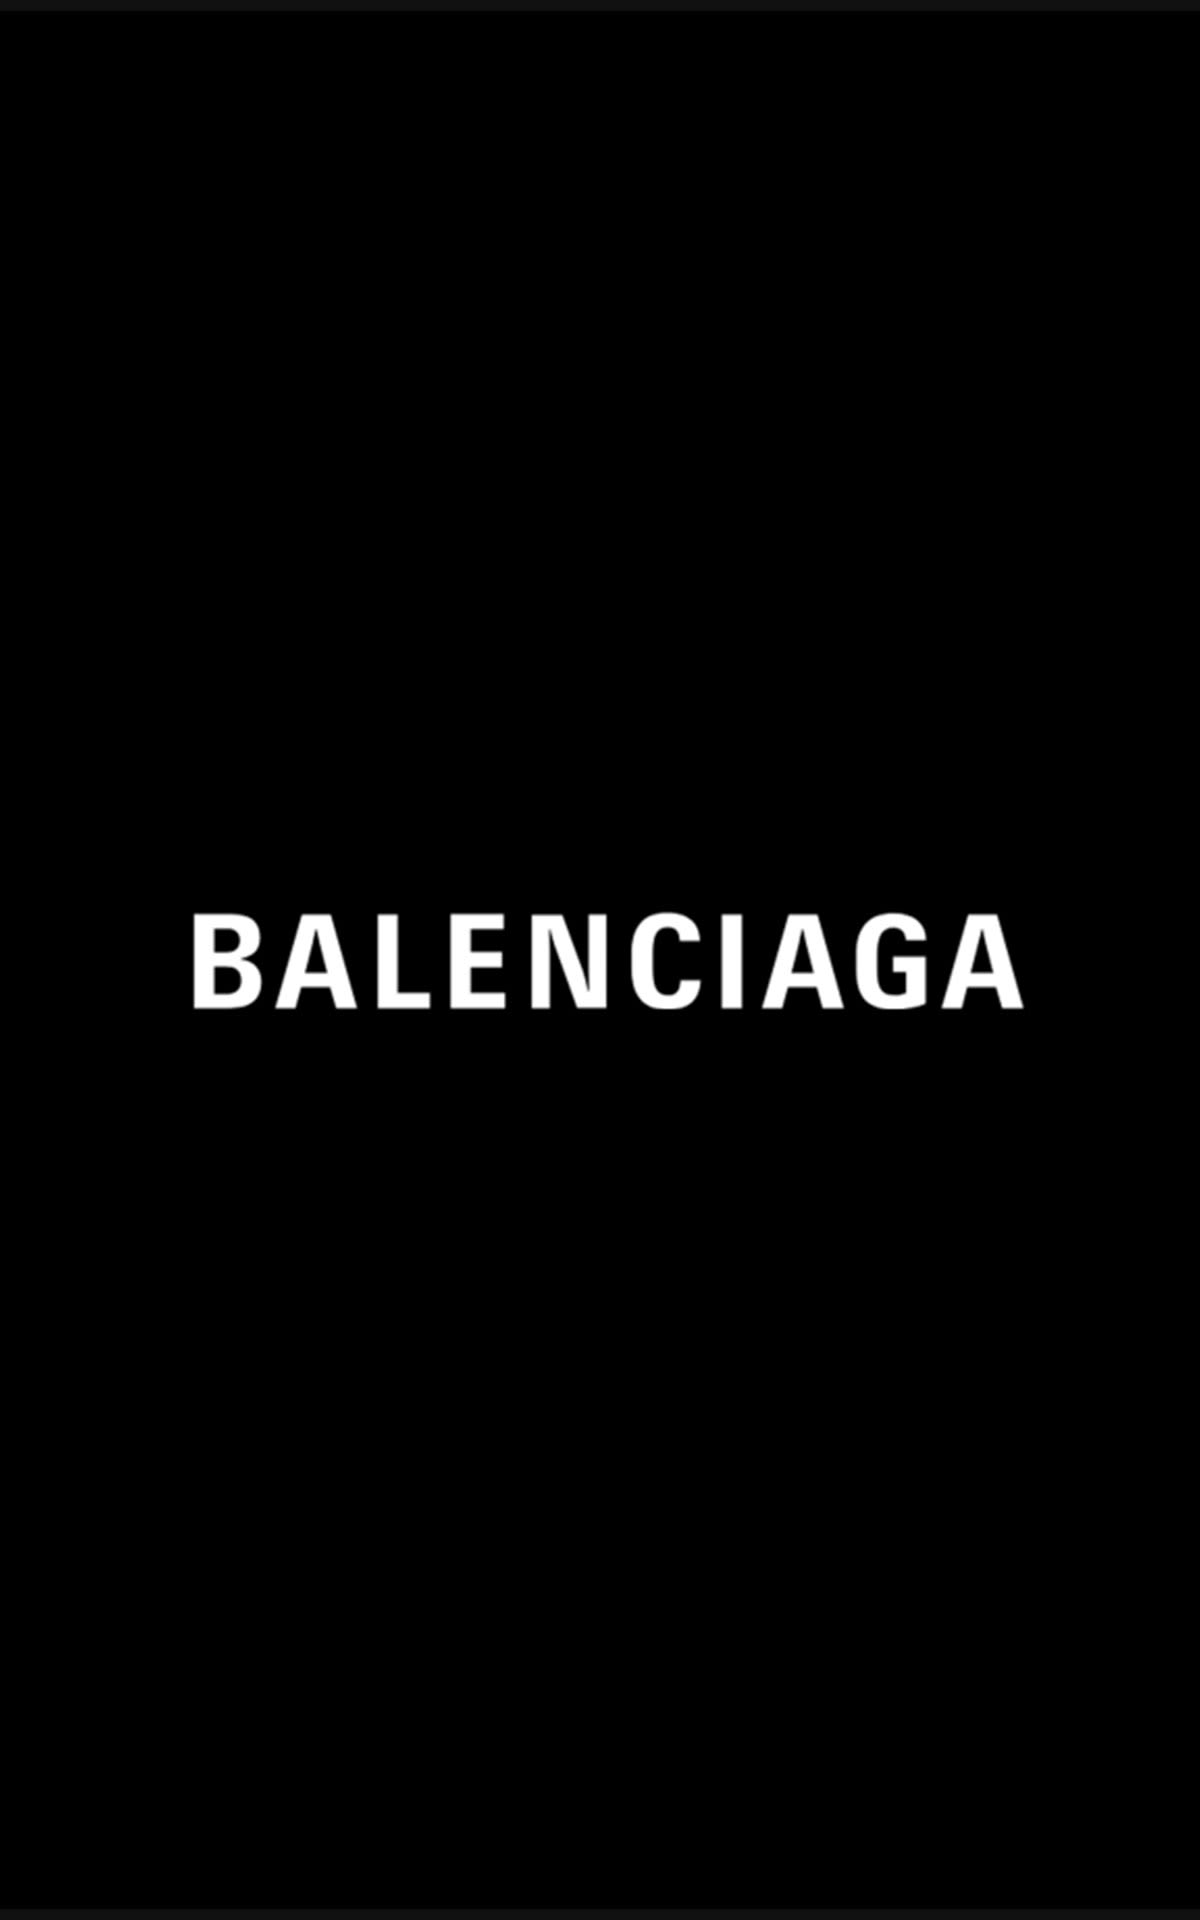 Now open | Balenciaga